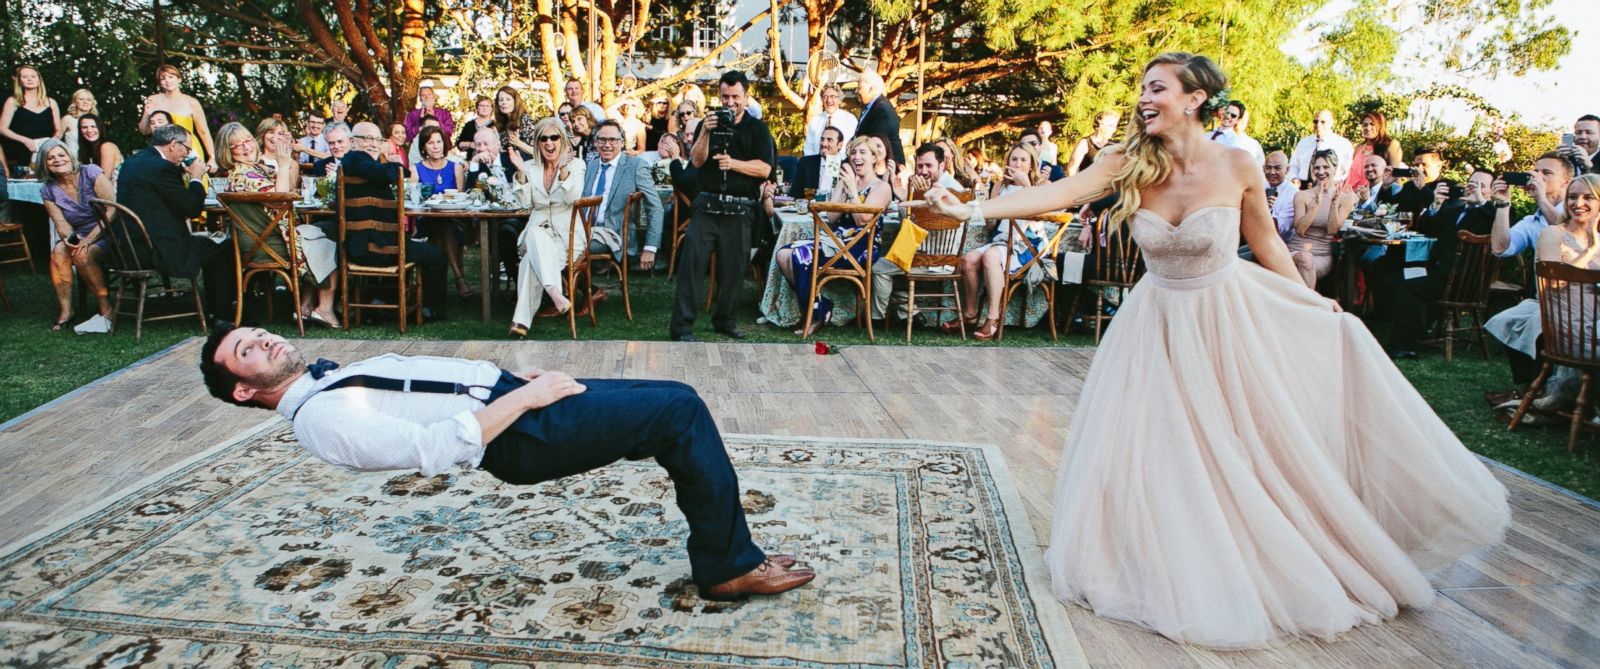 Ce couple offre aux invités une dance inoubliable ! Vous n’allez pas croire vos yeux !